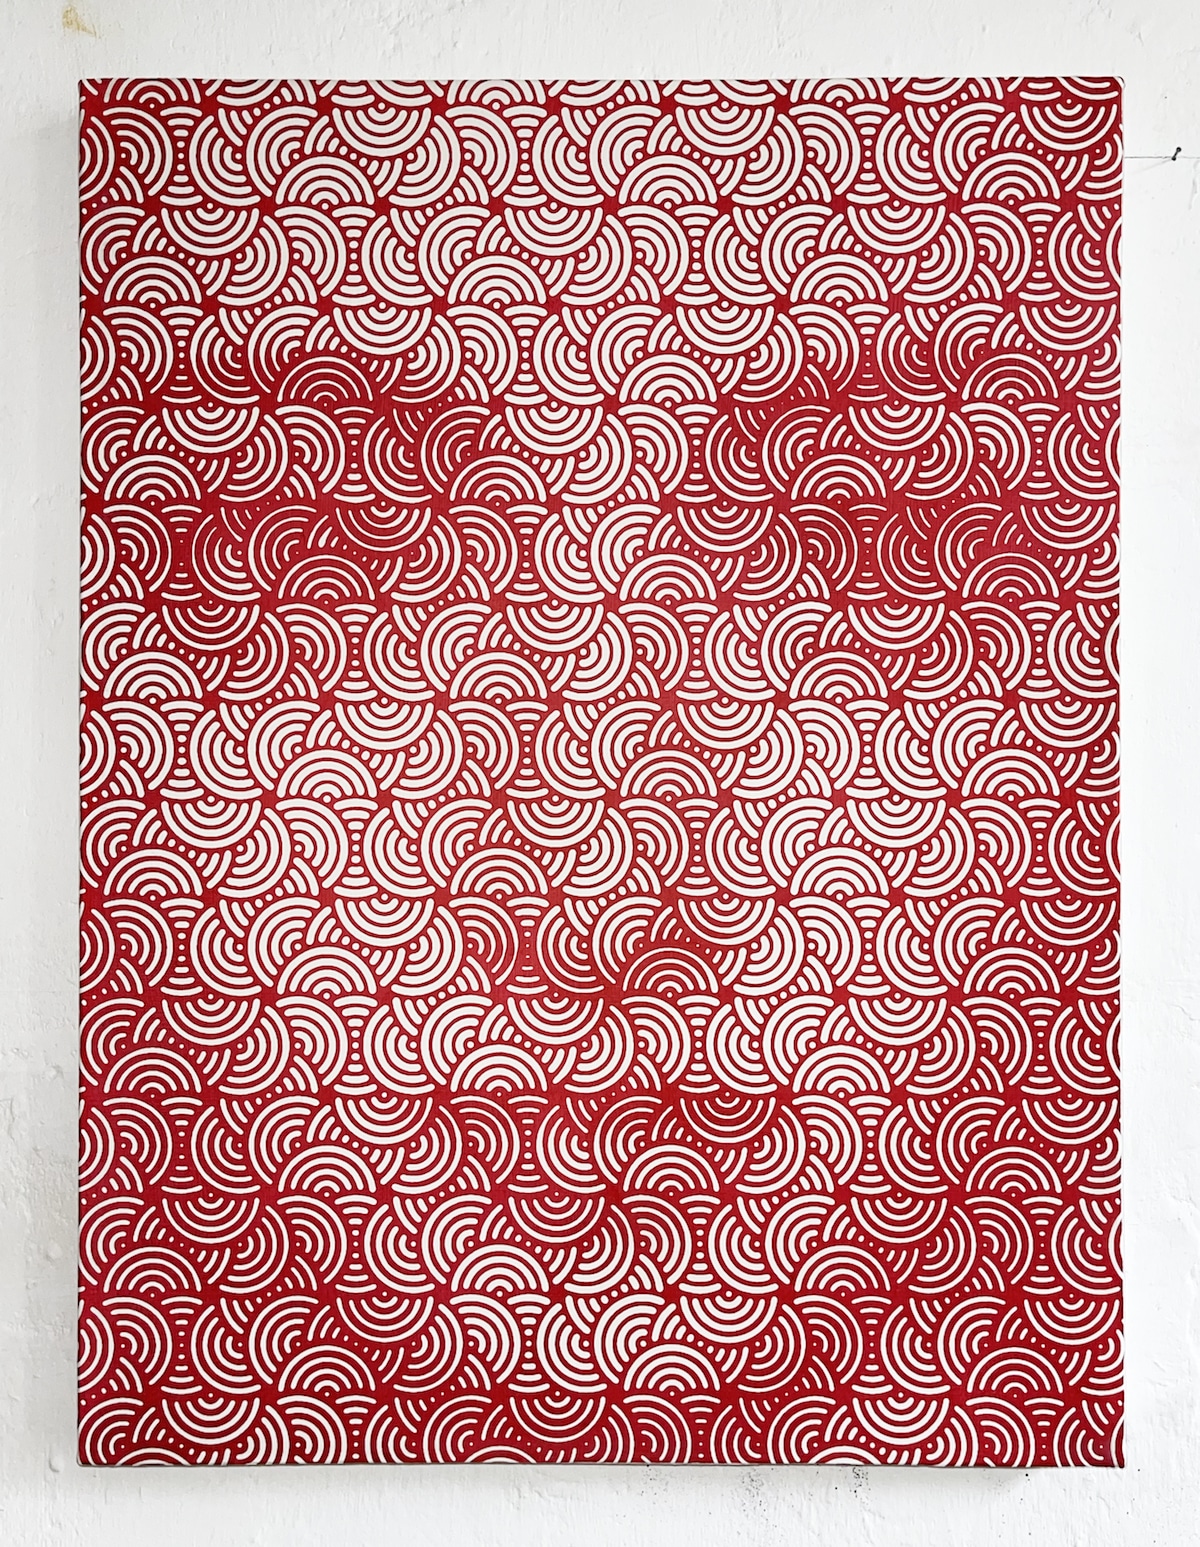 Portraits en motifs géométriques par Lee Wagstaff